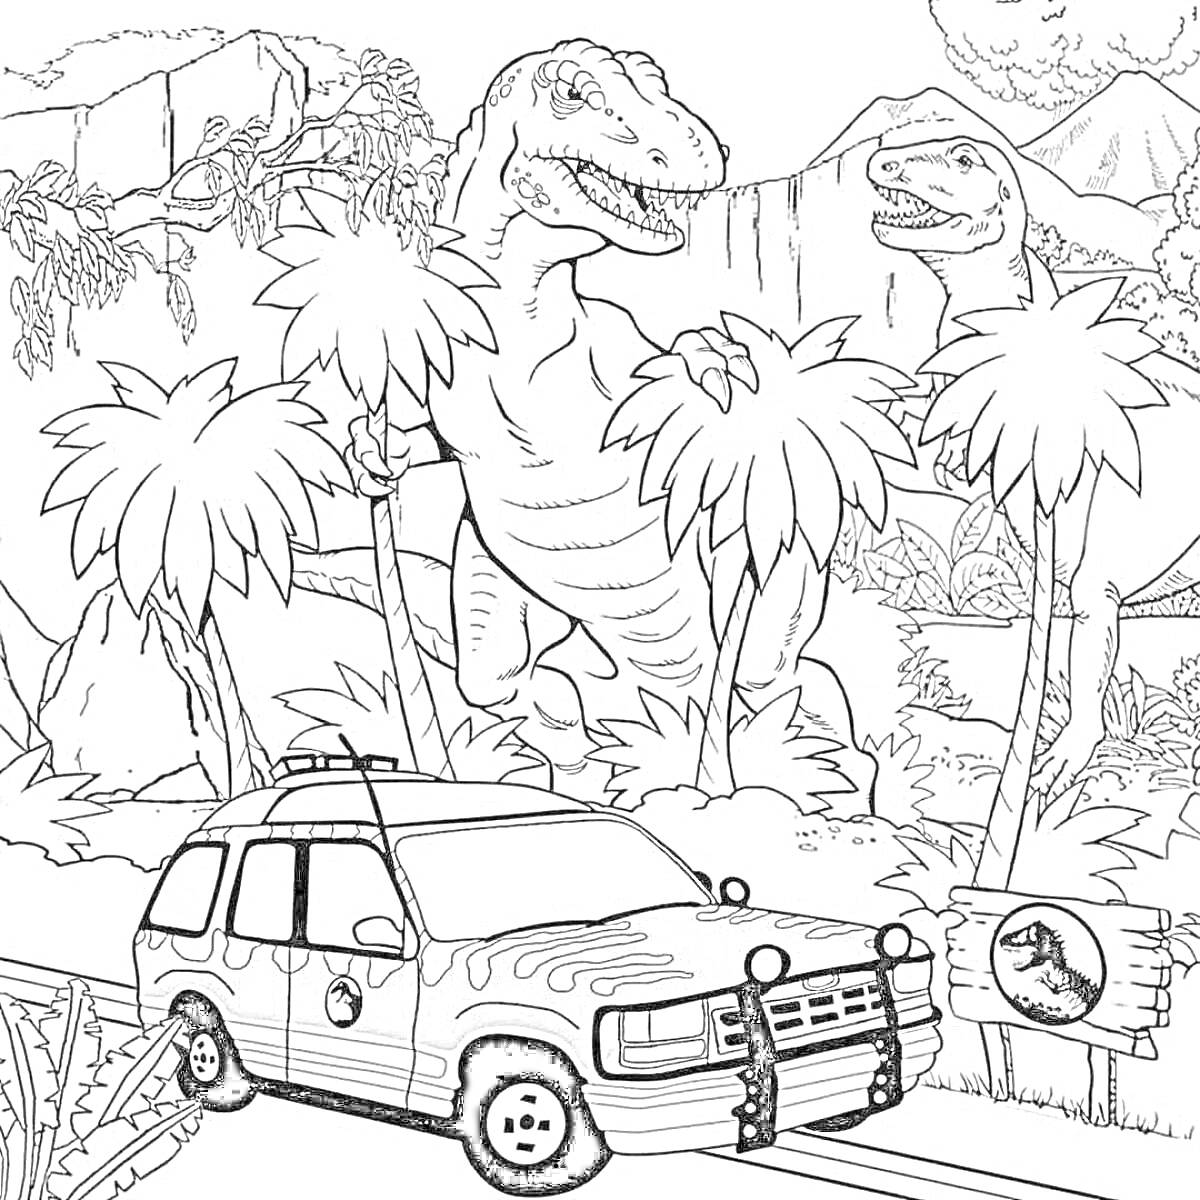 Раскраска Динозавры в джунглях с палеонтологическим автомобилем и знаком Юрского парка